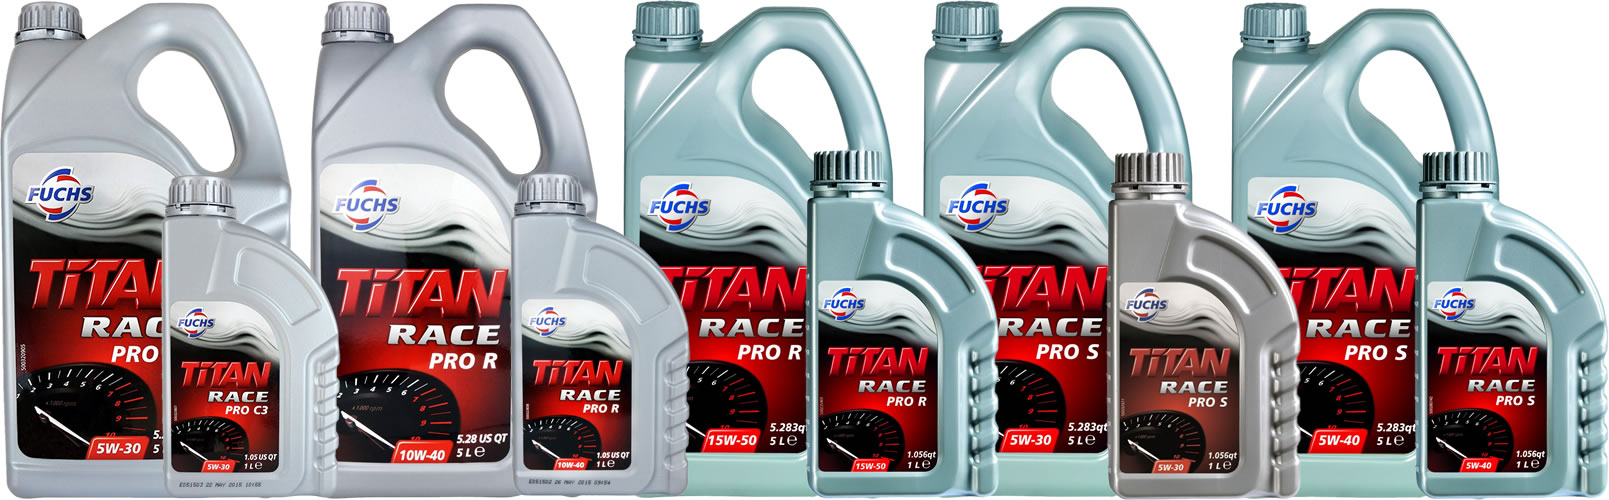 Fuchs Titan Race Pro range of engine oils